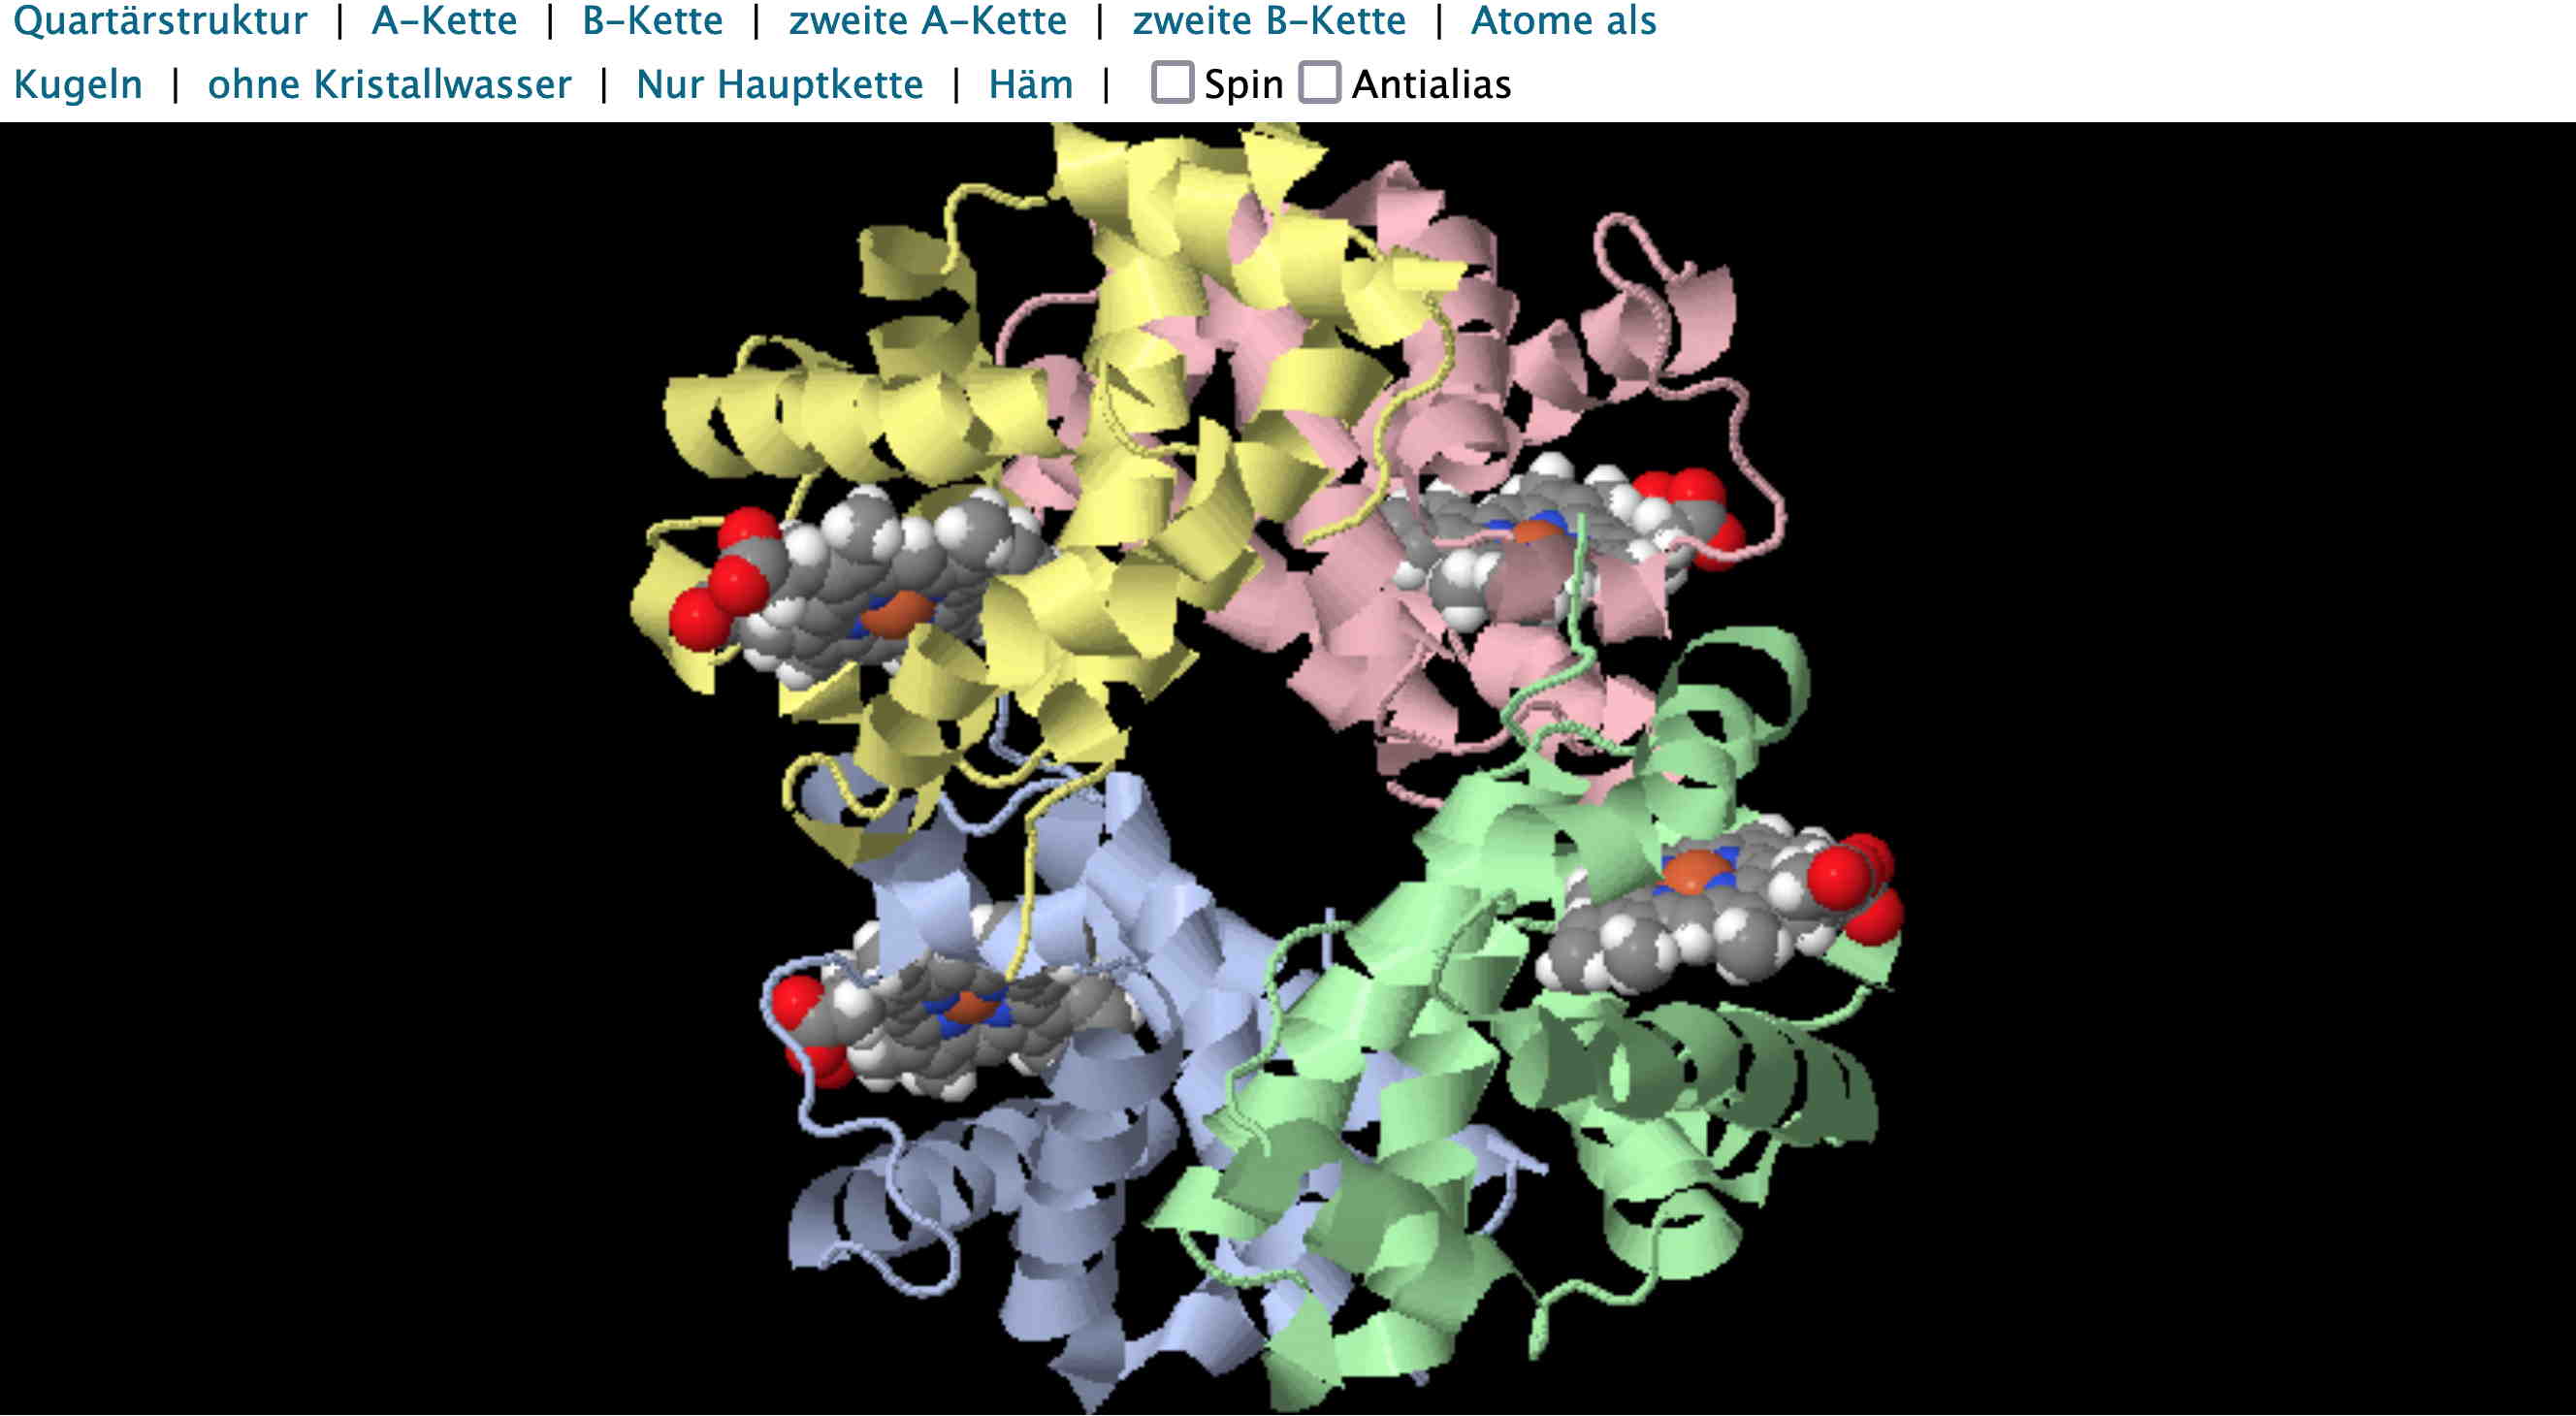 Benutzeroberfläche für die interaktive Animation zur Darstellung der vier Untereinheiten (Tertiärstrukturen), welche zusammen die Quartärstruktur, also das ganze Protein Hämoglobin bilden (swisseduc)